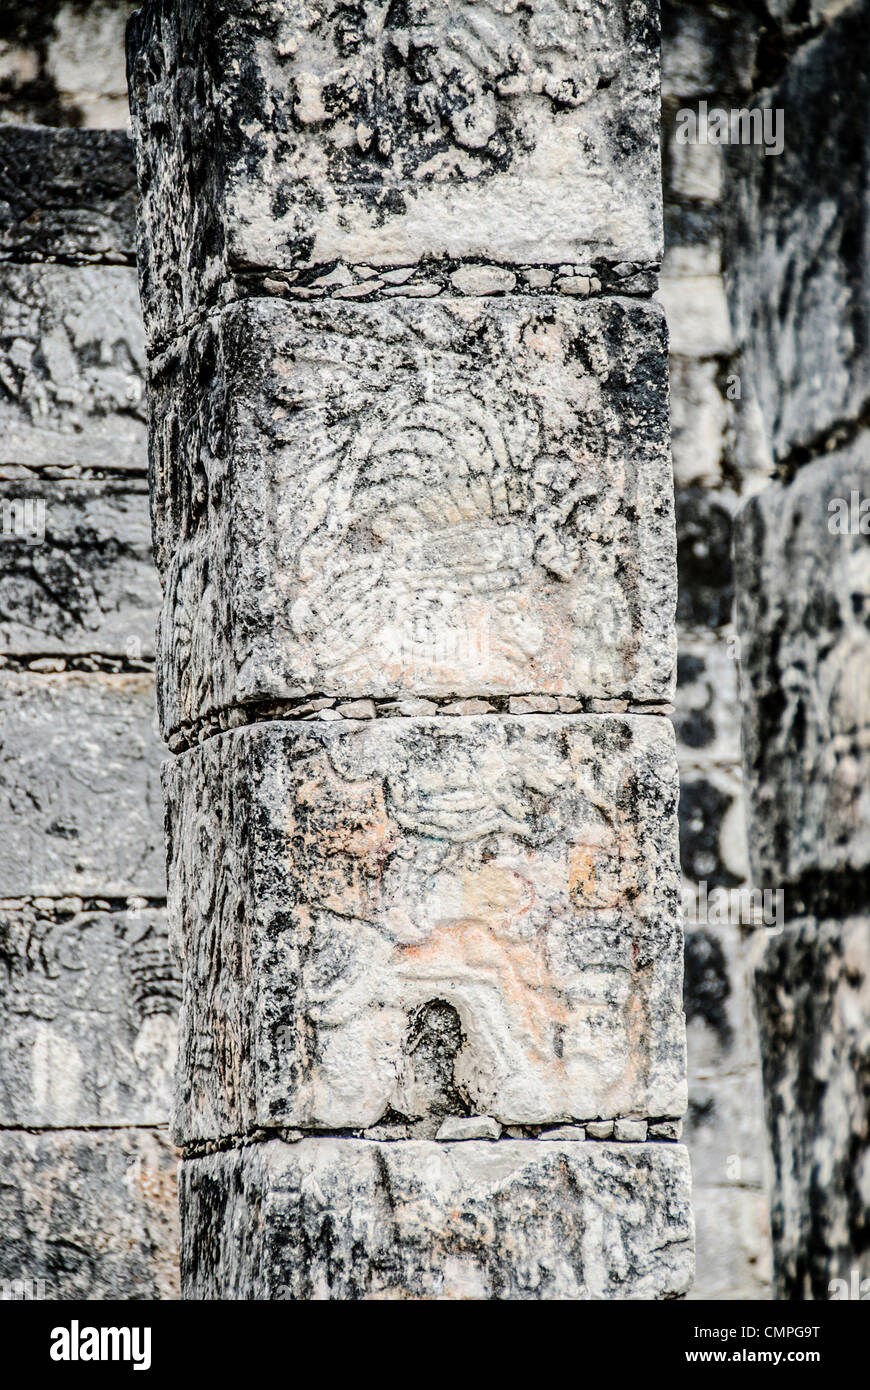 CHICHEN ITZA, Mexique - piliers de pierre à la Zone archéologique de Chichen Itza Chichen Itza, Mexique Banque D'Images